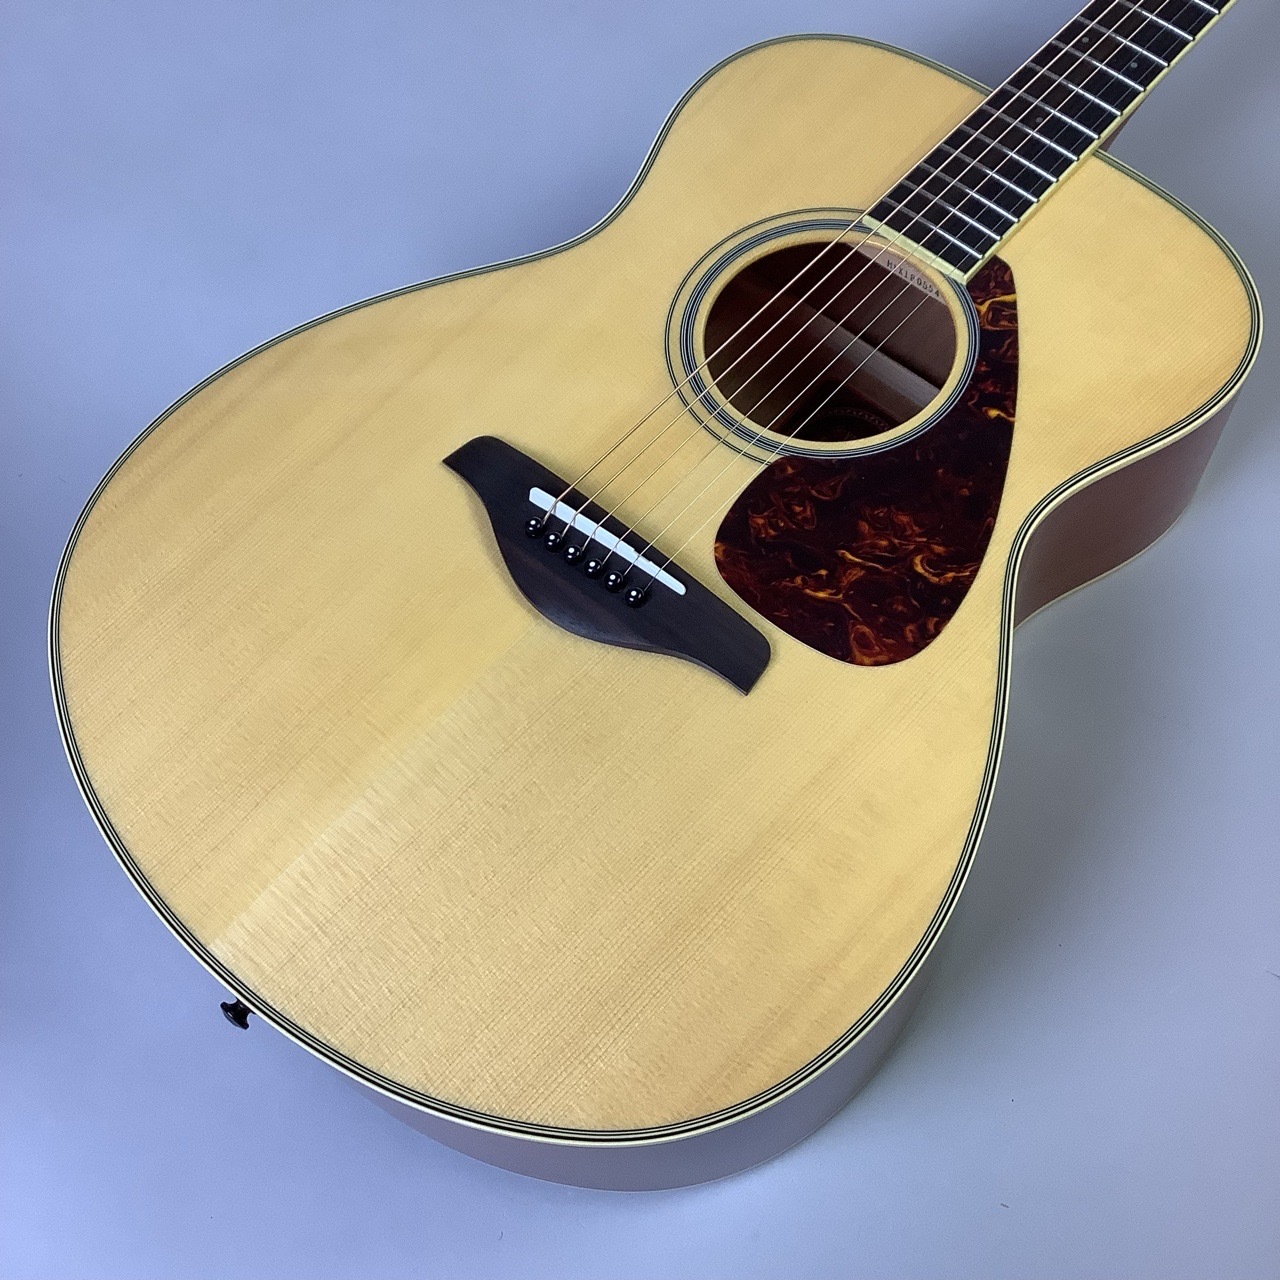 YAMAHA FS720Sギター - アコースティックギター